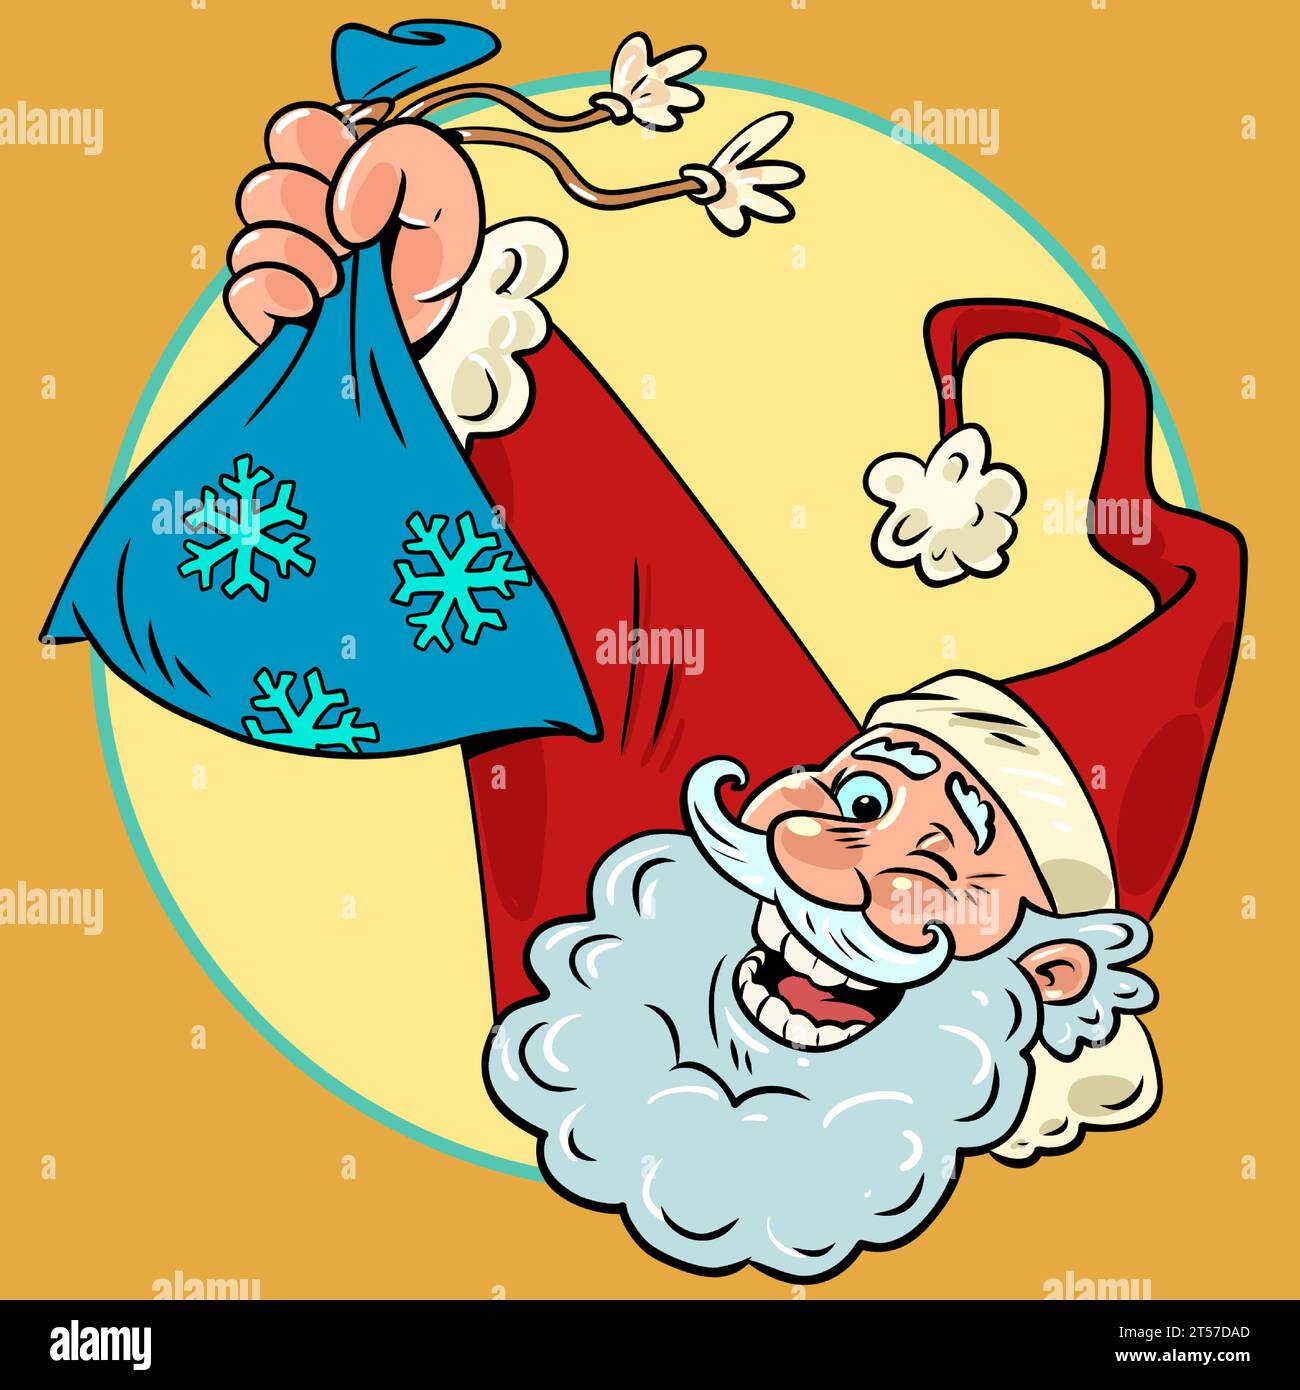 Geschenke für den saisonalen Feiertag. Rabatte für das kommende neue Jahr. Der weihnachtsmann hält eine Tasche in der Hand. Comic Comic Comic Pop Art Retro Vektor illu Stock Vektor